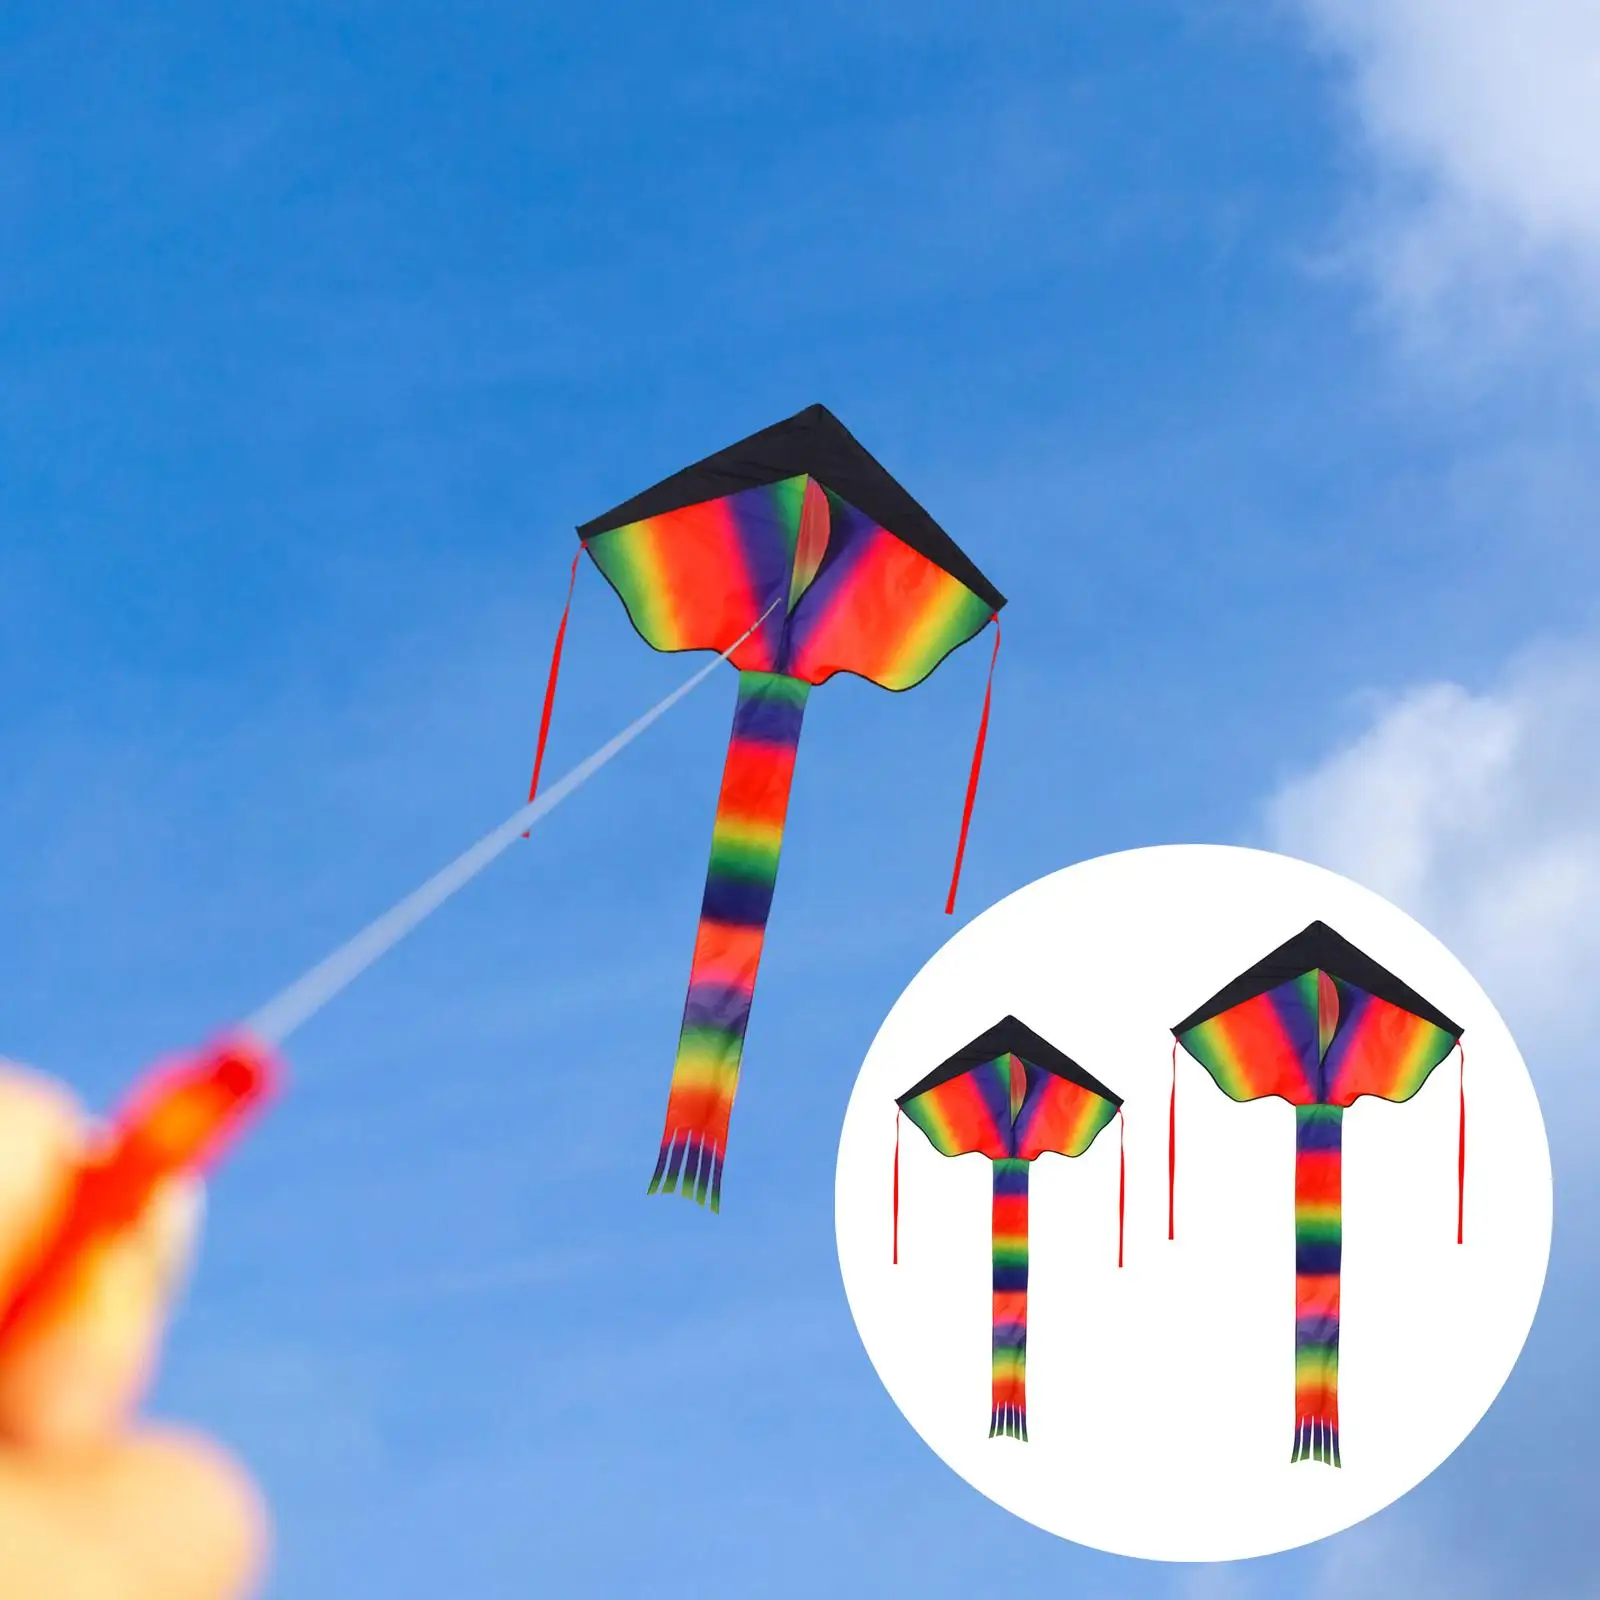 Giant Delta Kites Fly Kite Easy to Flying Toys Kite for Outdoor Beginner